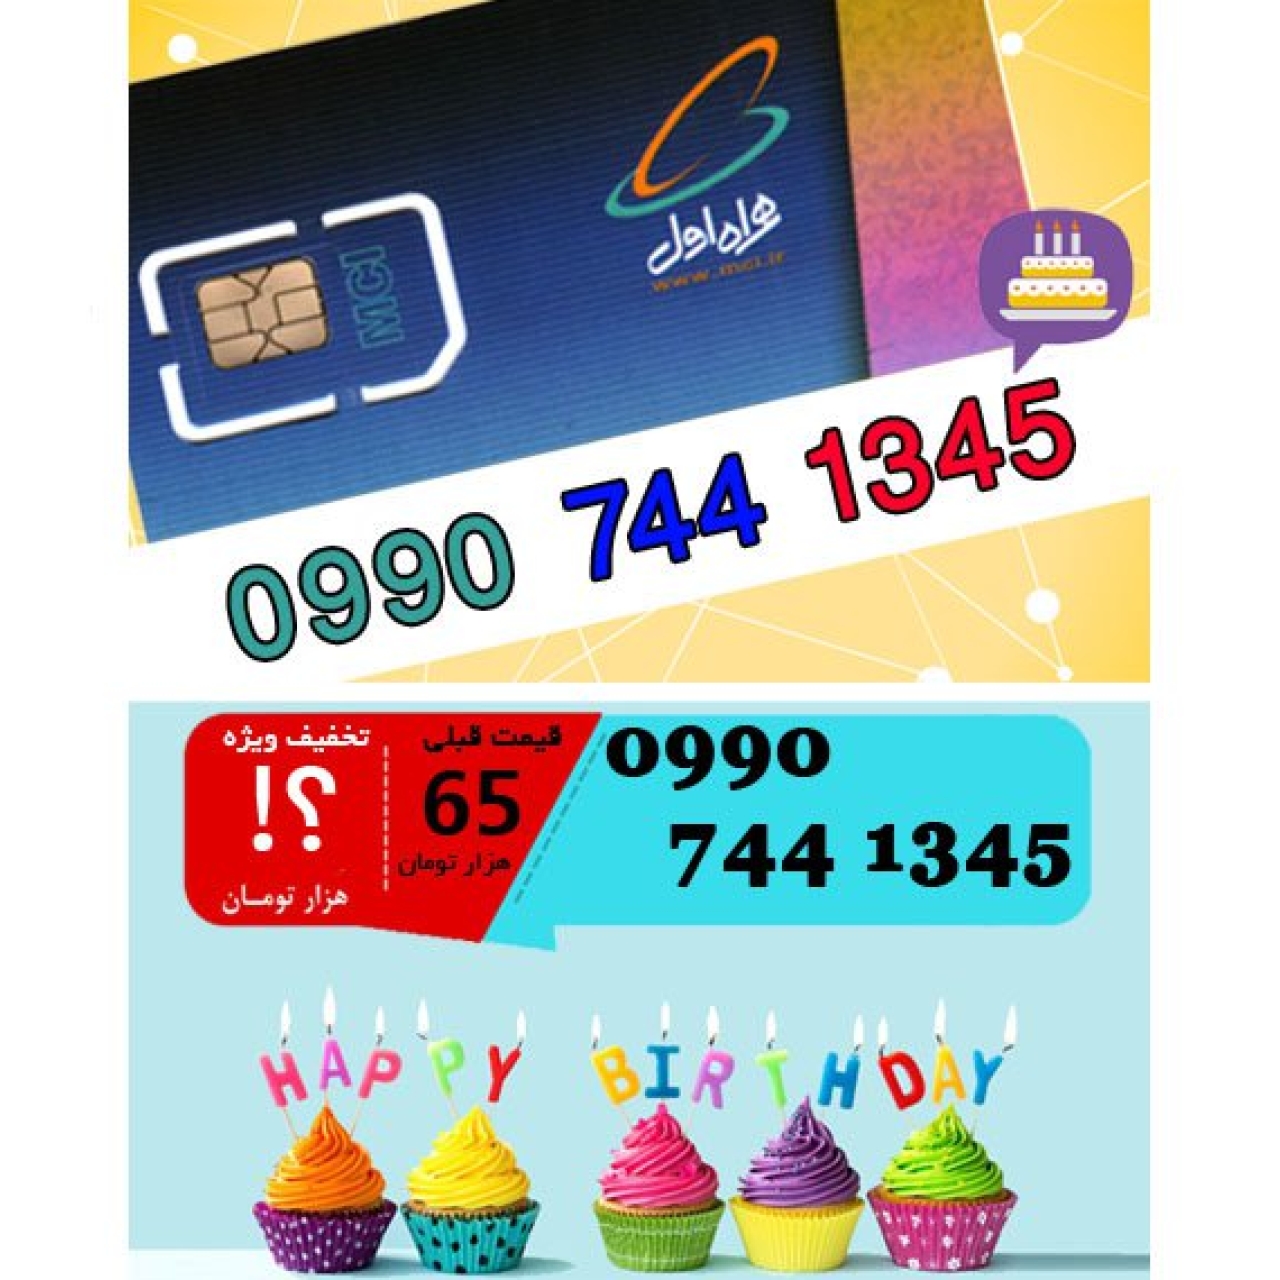 سیم کارت اعتباری همراه اول 09907441345 تاریخ تولد